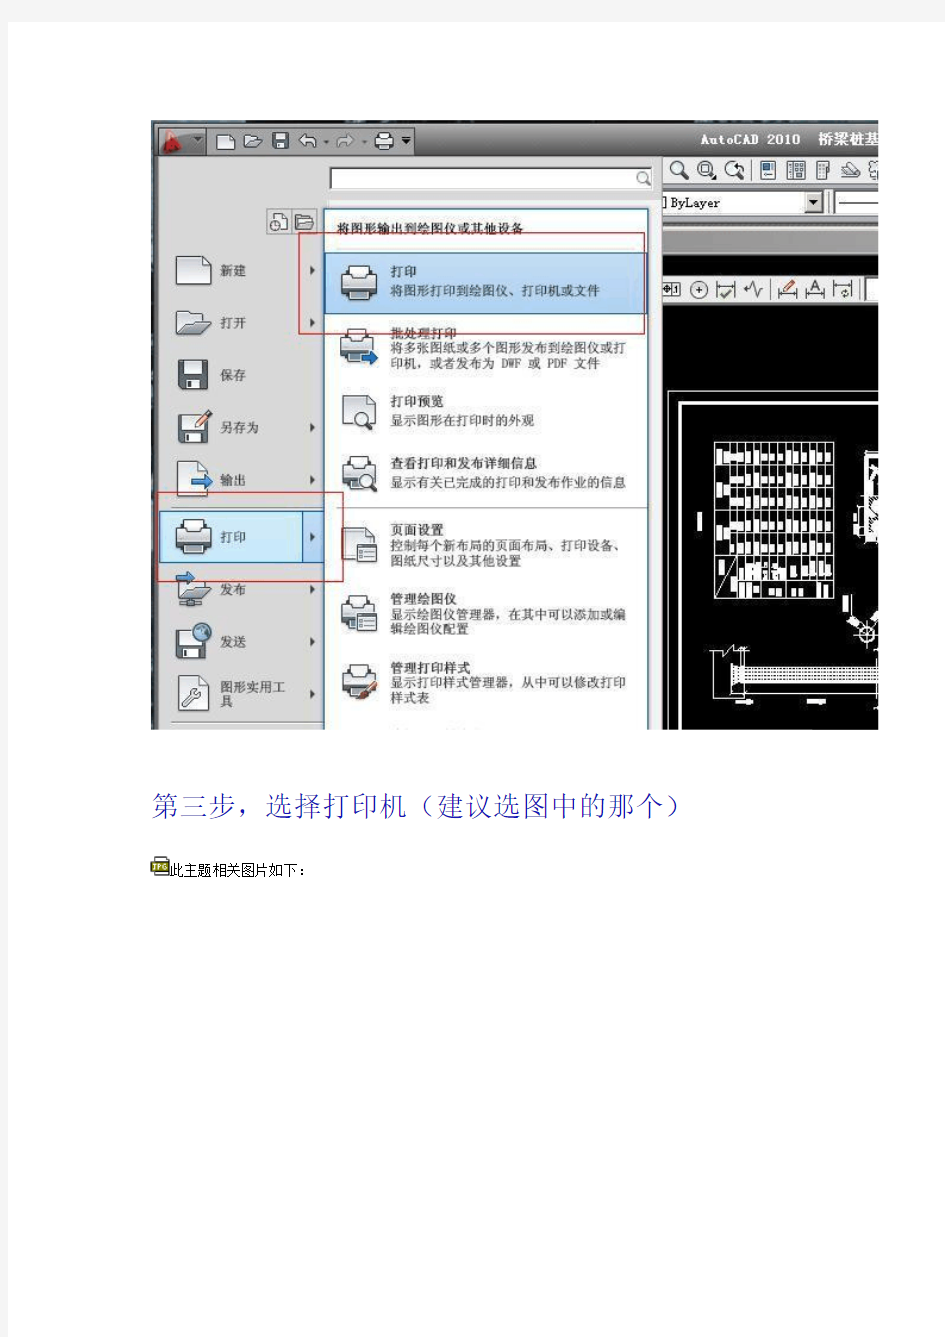 关于CAD出图dwg转PDF的详细操作   非常实用